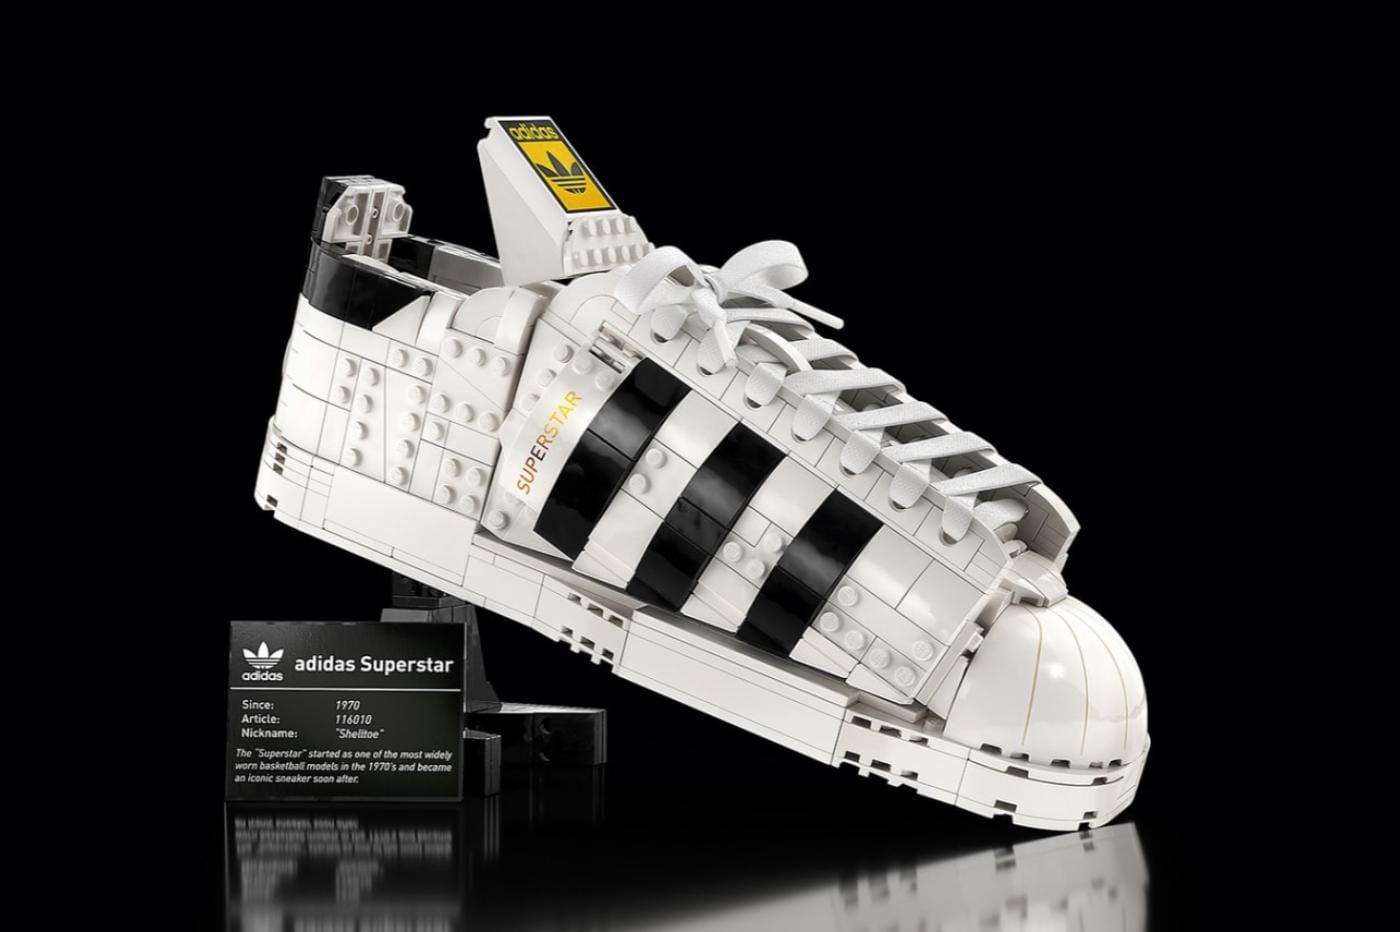 LEGO et Adidas s'associent pour sortir un set sneaker Superstar de 700 briques #4